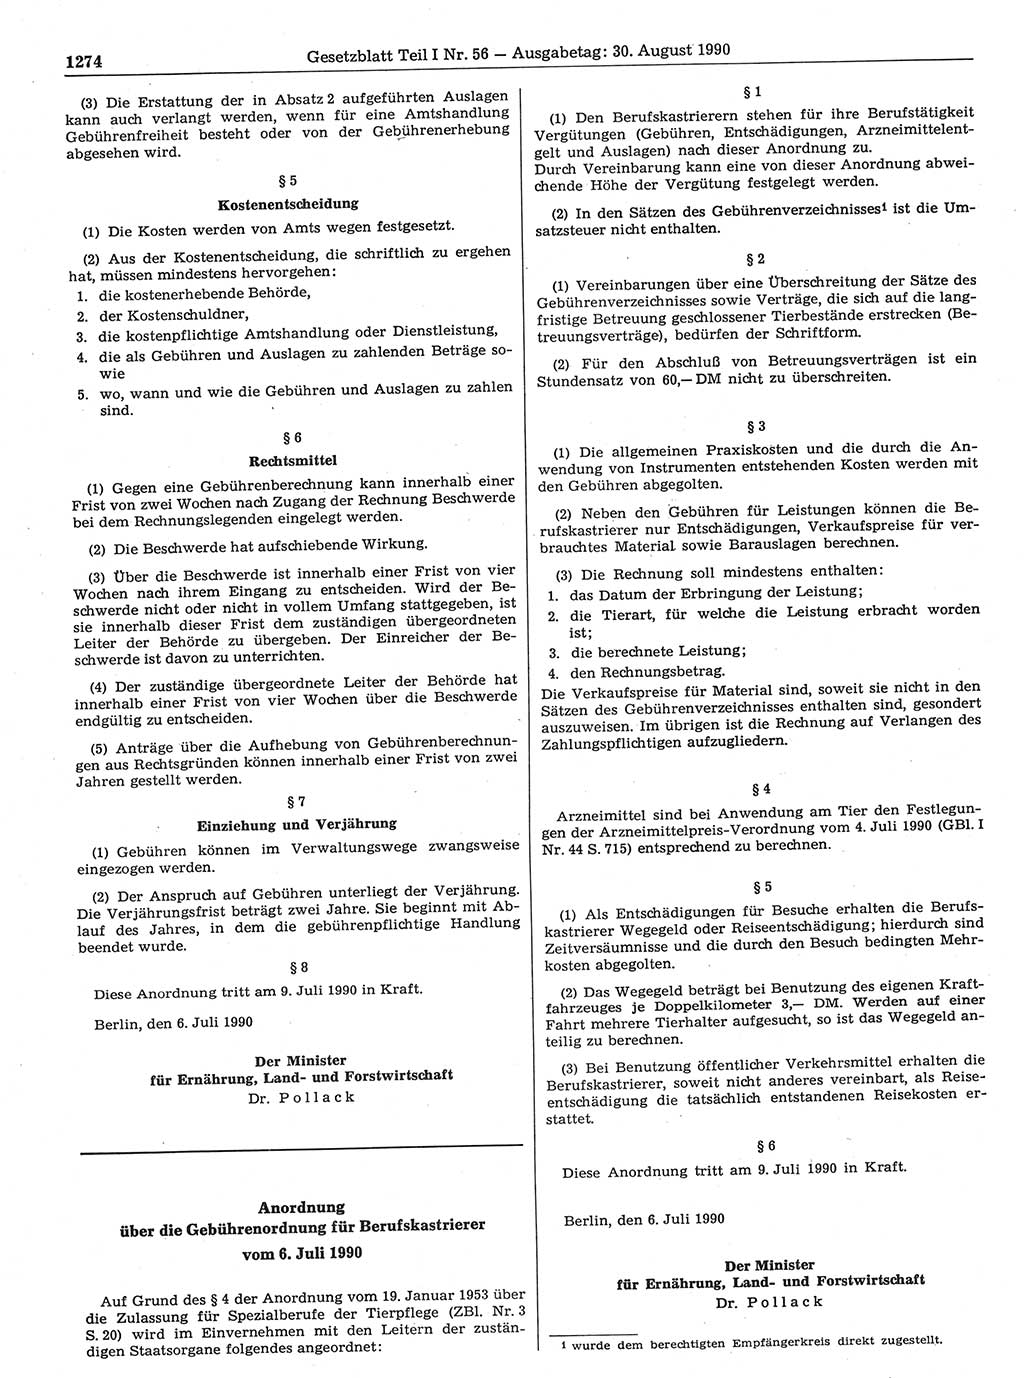 Gesetzblatt (GBl.) der Deutschen Demokratischen Republik (DDR) Teil Ⅰ 1990, Seite 1274 (GBl. DDR Ⅰ 1990, S. 1274)